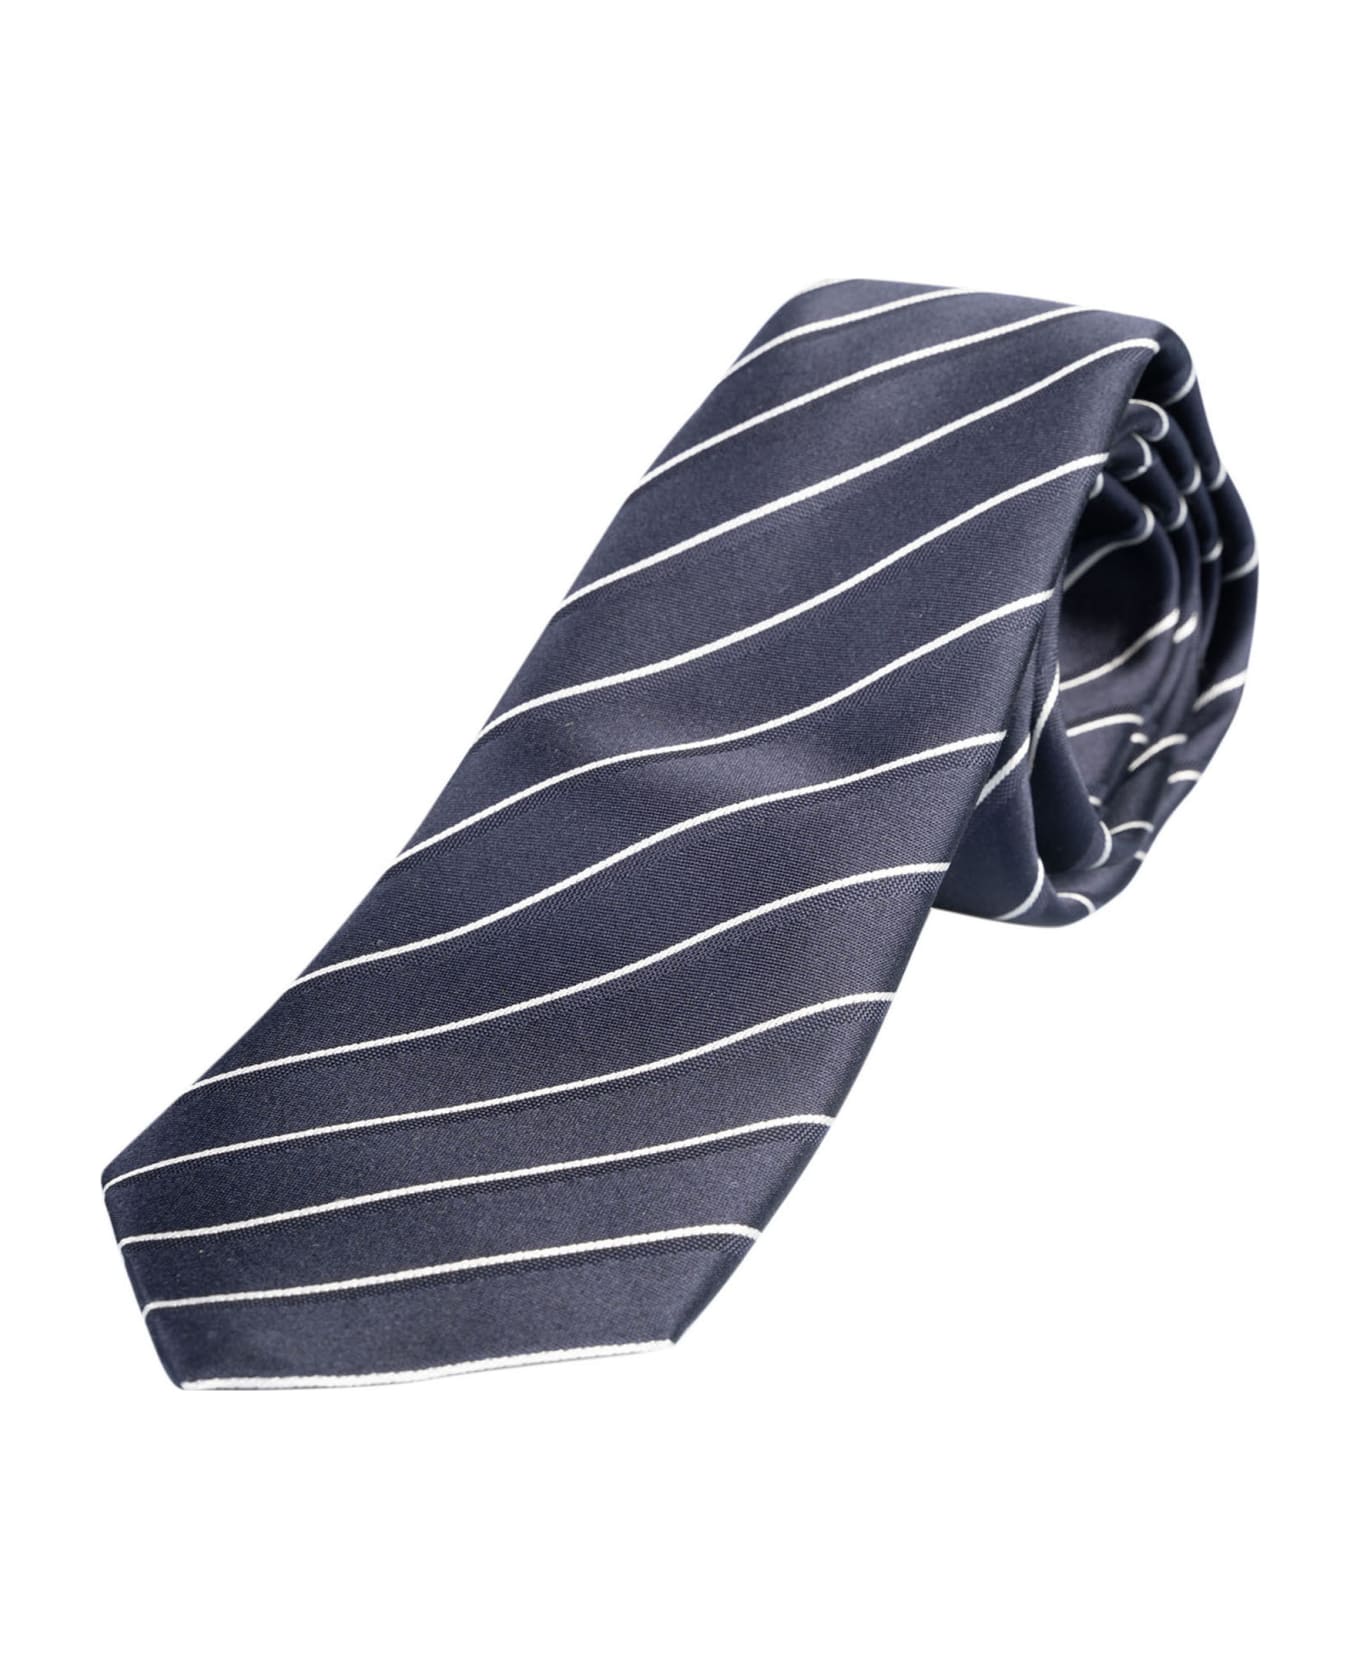 Giorgio Armani Striped Neck Tie - C